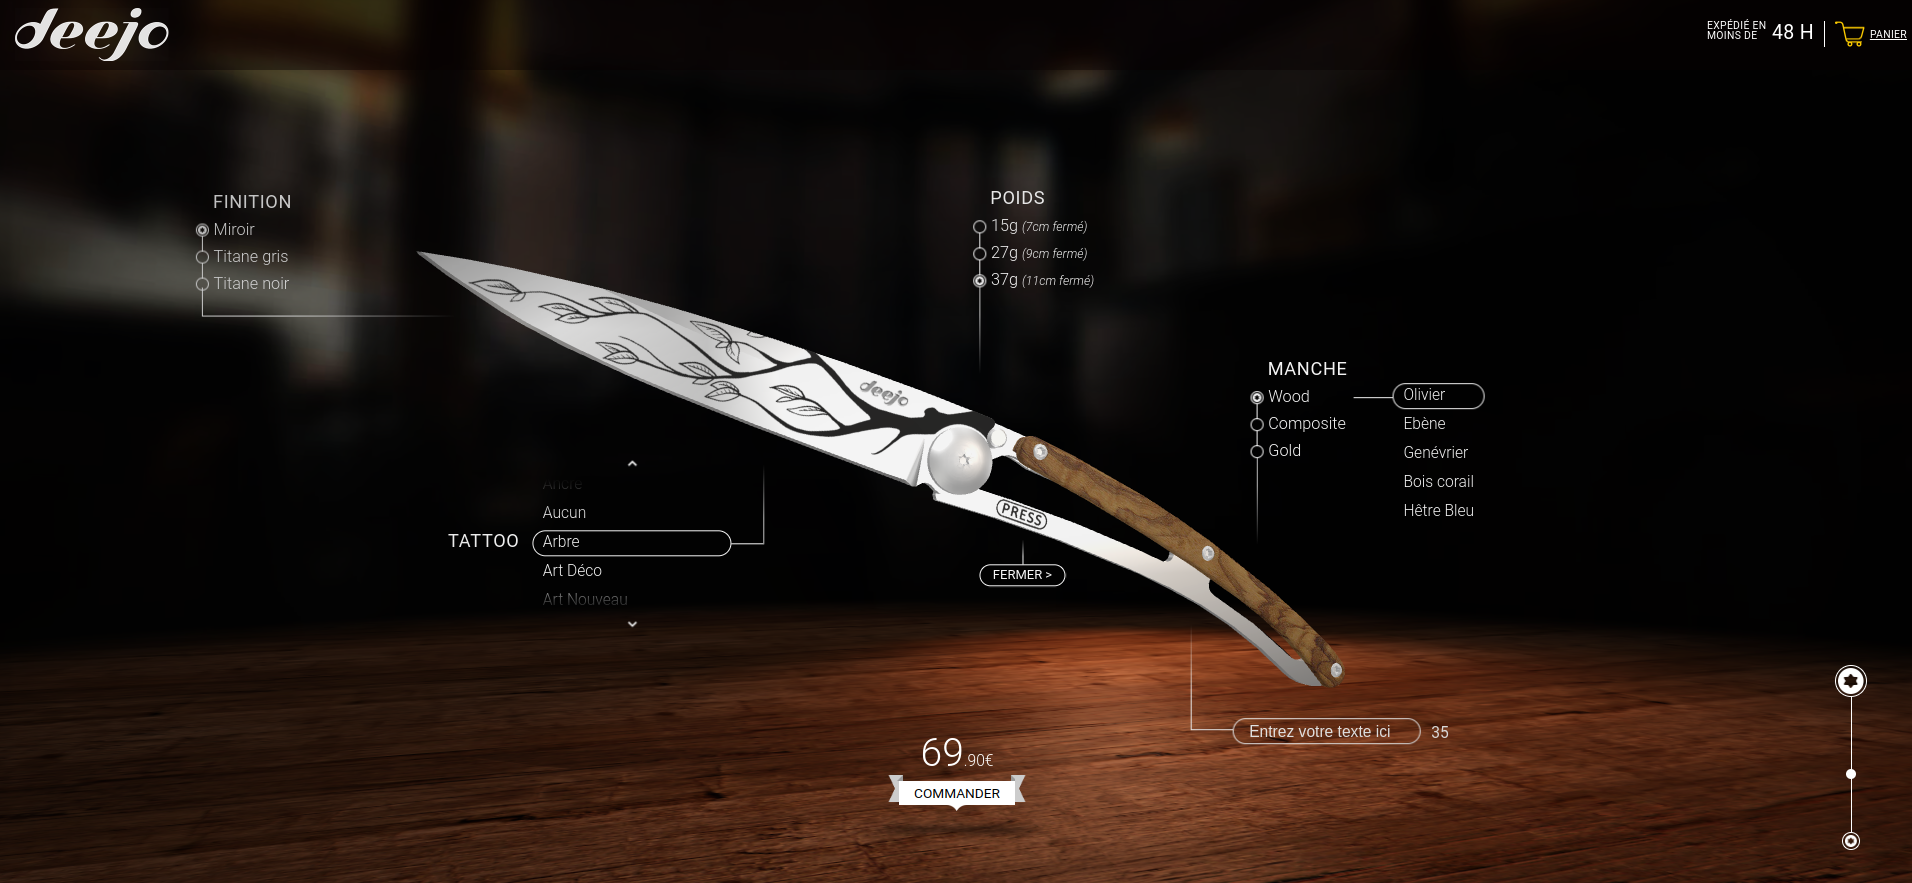 Na stronie e-commerce Deejo użytkownik może zaprojektować swój spersonalizowany nóż